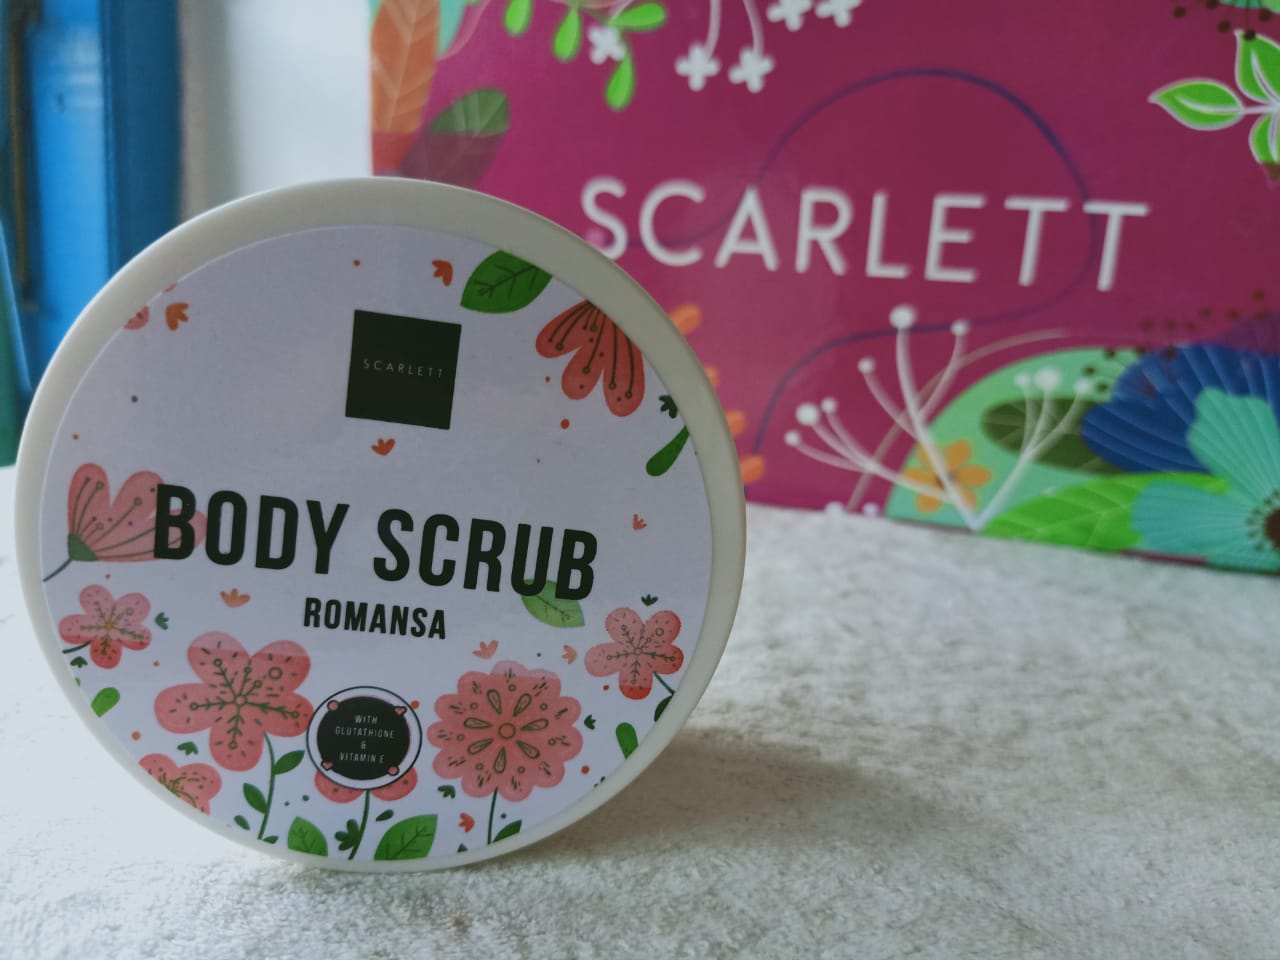 Body scrub scarlett